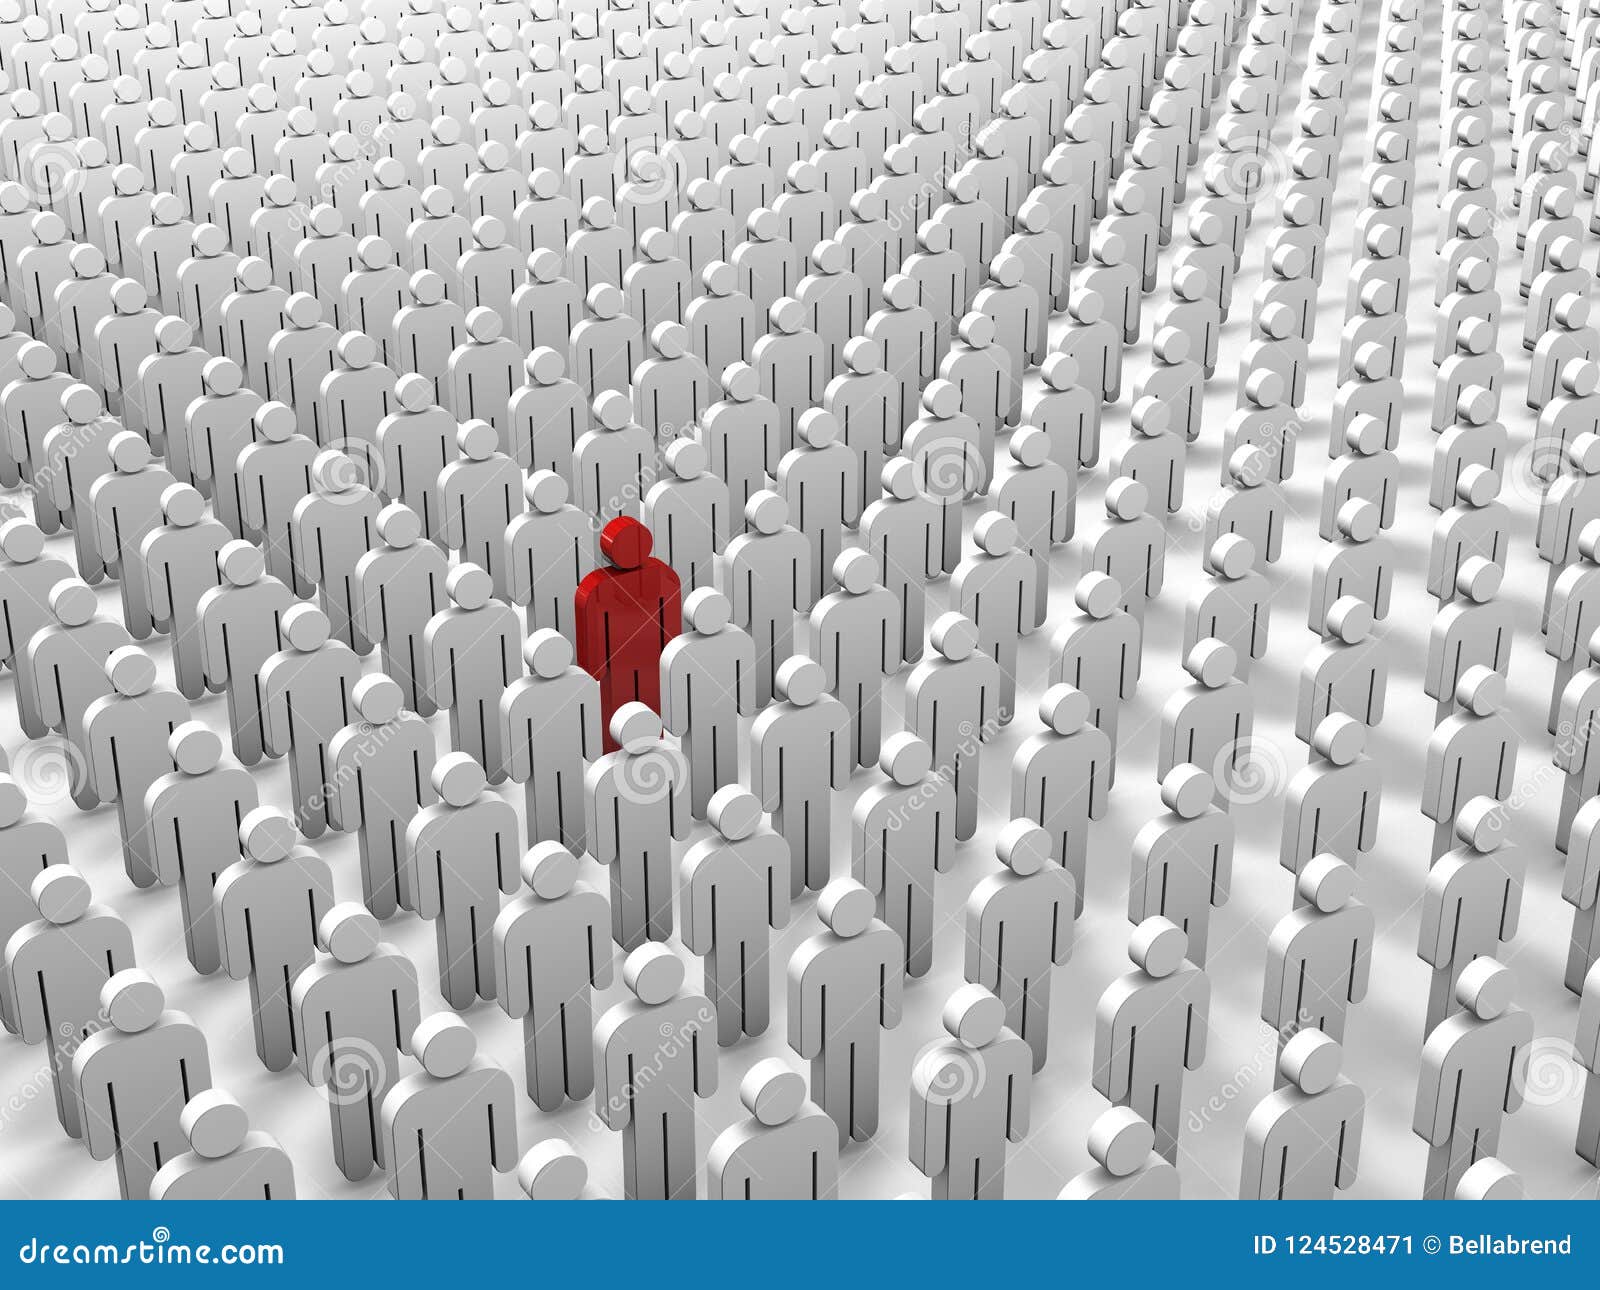 Abstract individualiteit, uniciteits en leidings bedrijfsconcept: enig rood 3D mensencijfer in overvolle groep witte cijfers